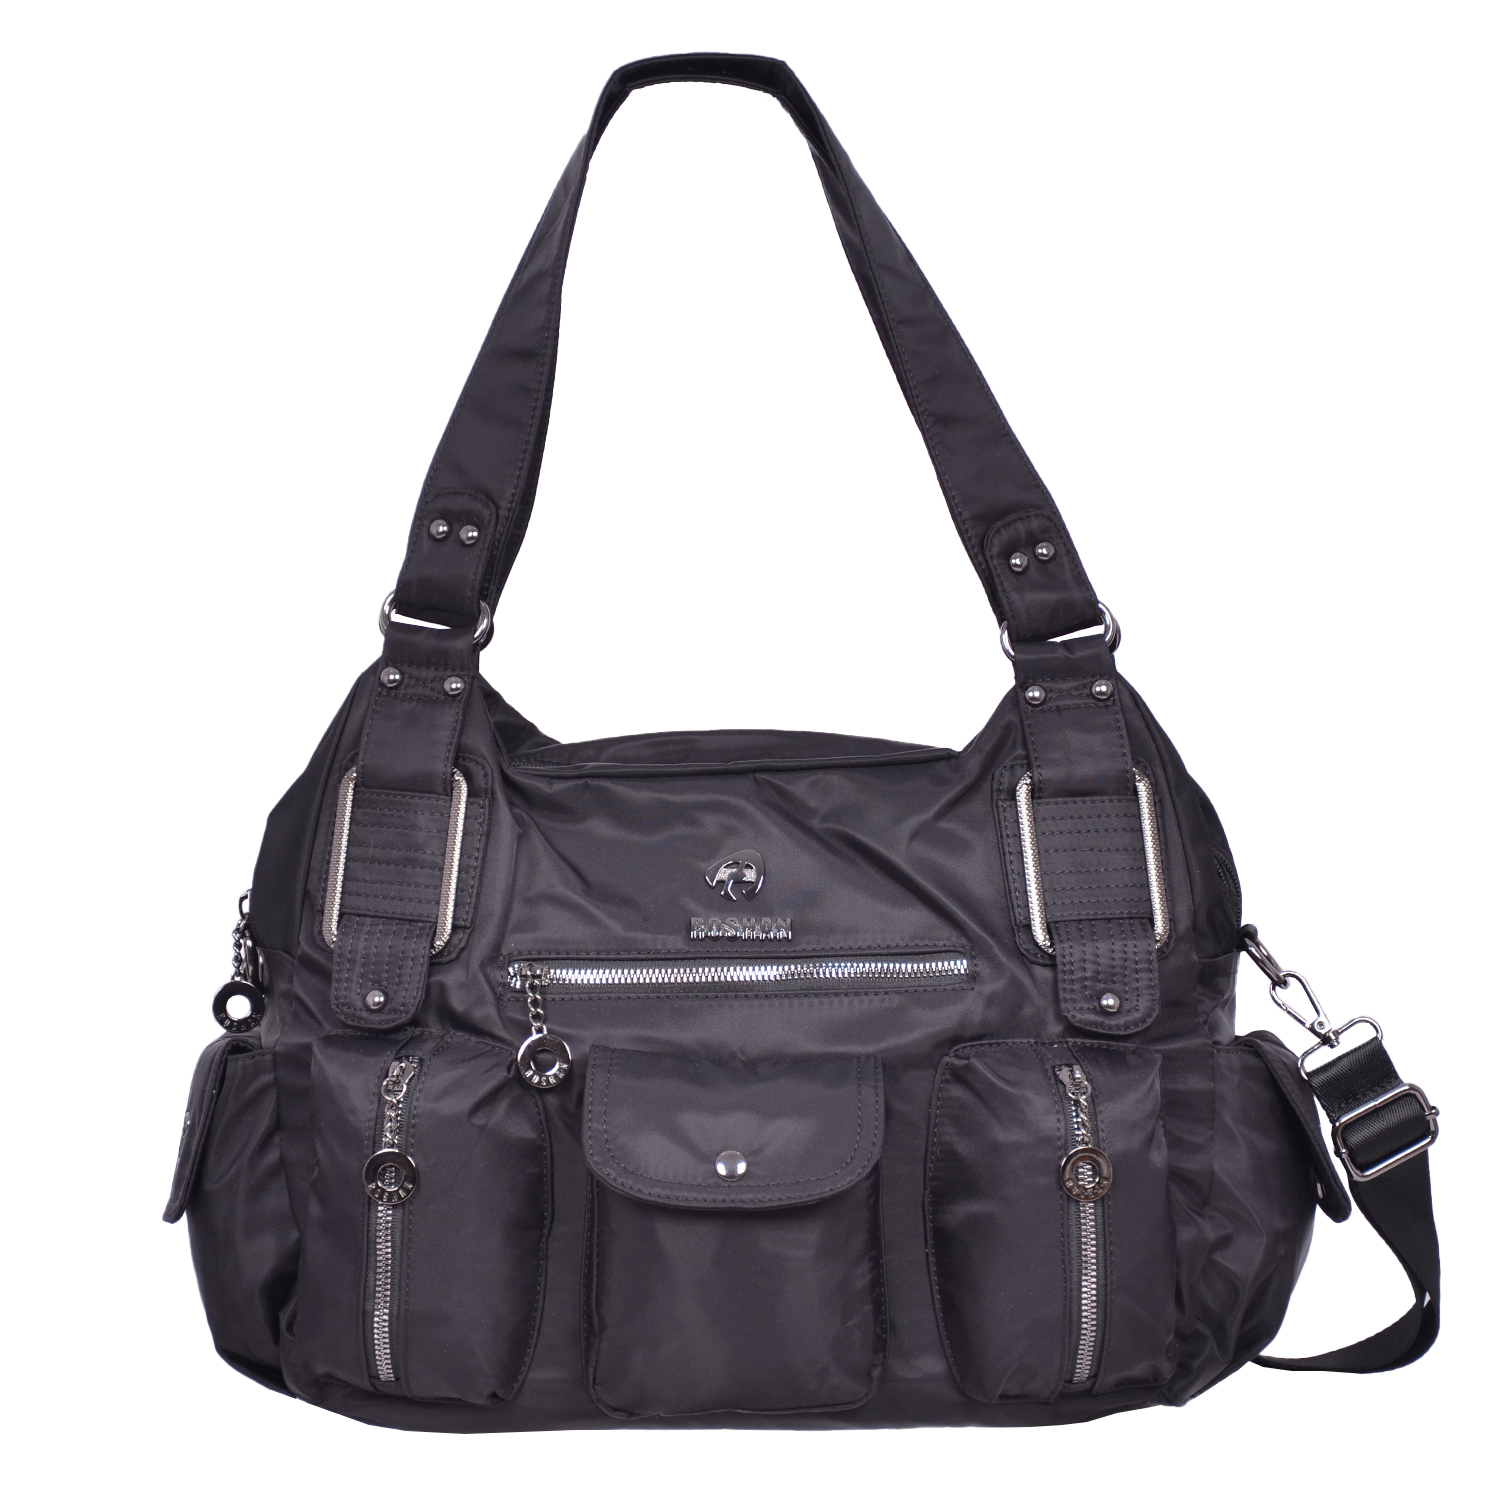 RoshanBags_Roshan Womens Handbag with sling A0248 Black